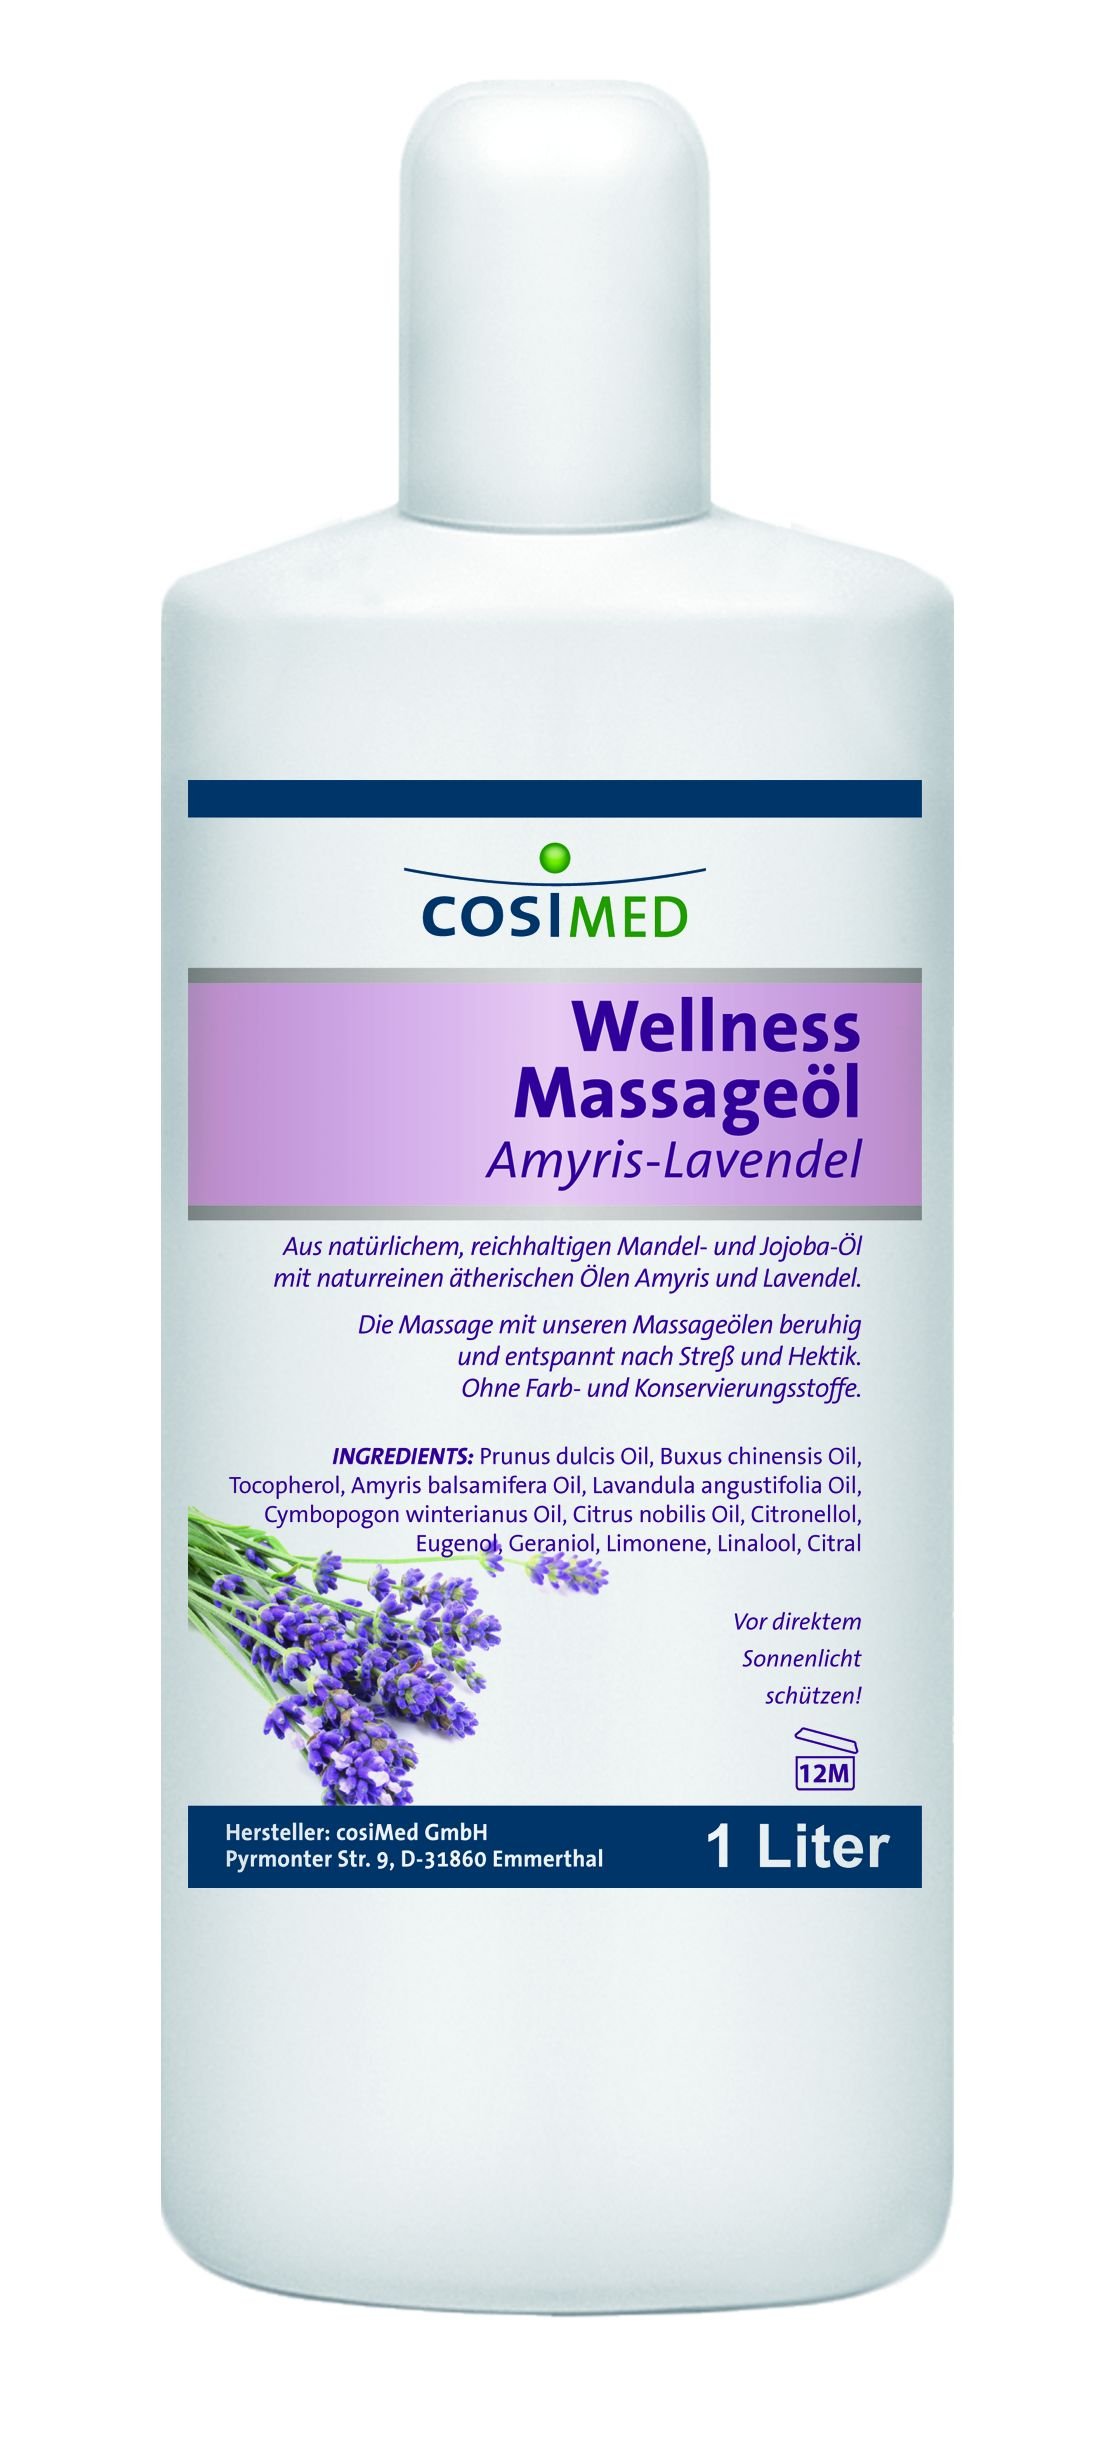 Wellness-Massageöl Amyris-Lavendel von cosiMed, 1 Liter